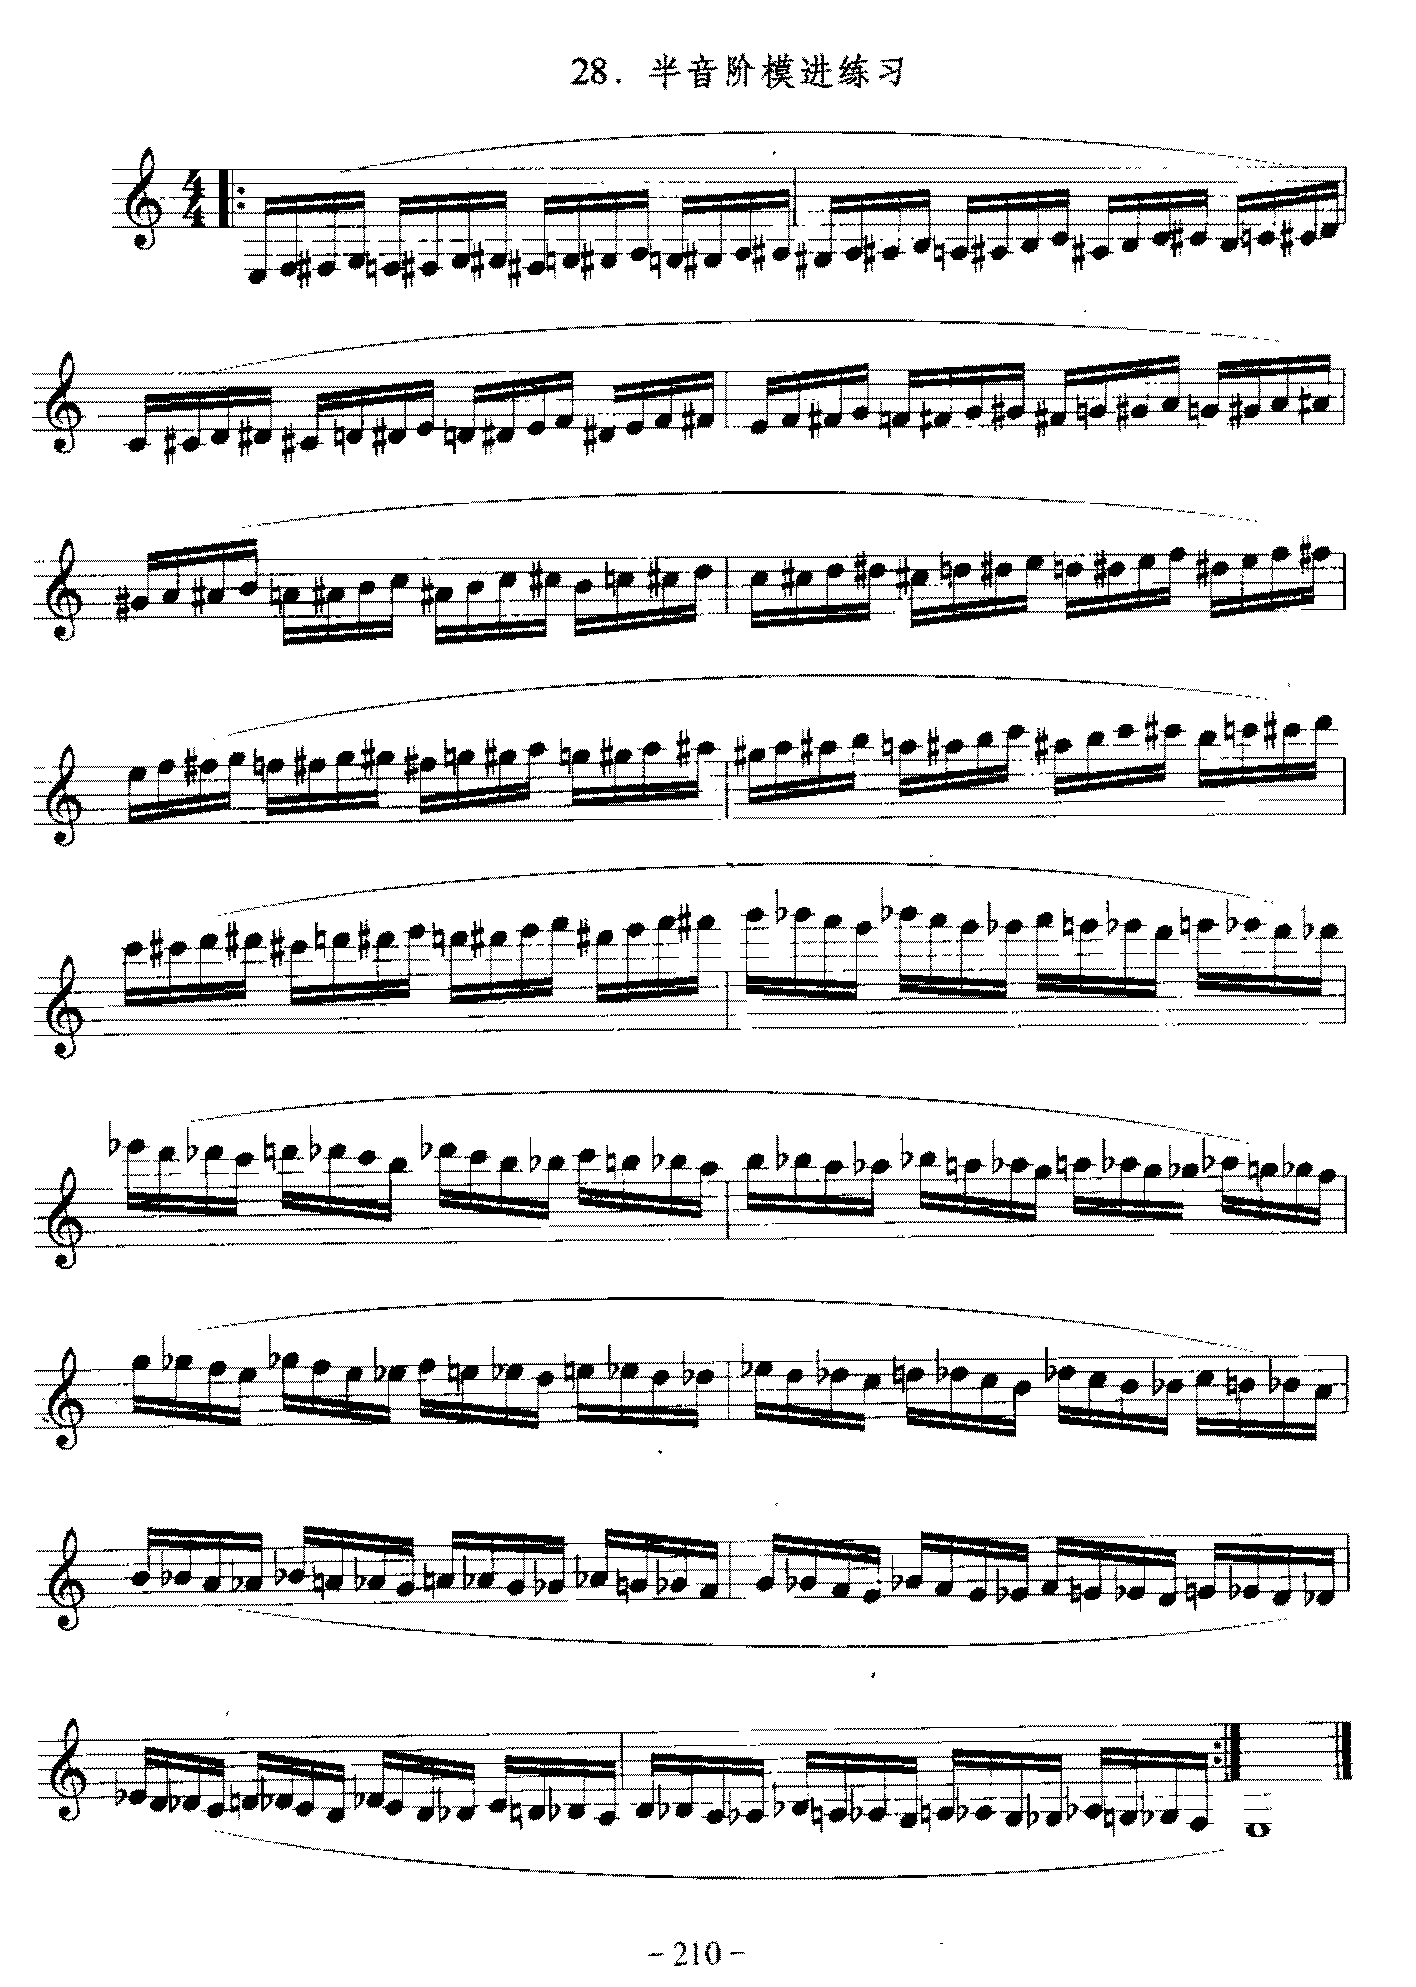 单簧管日常基础技术练习曲《半音阶模进练习》